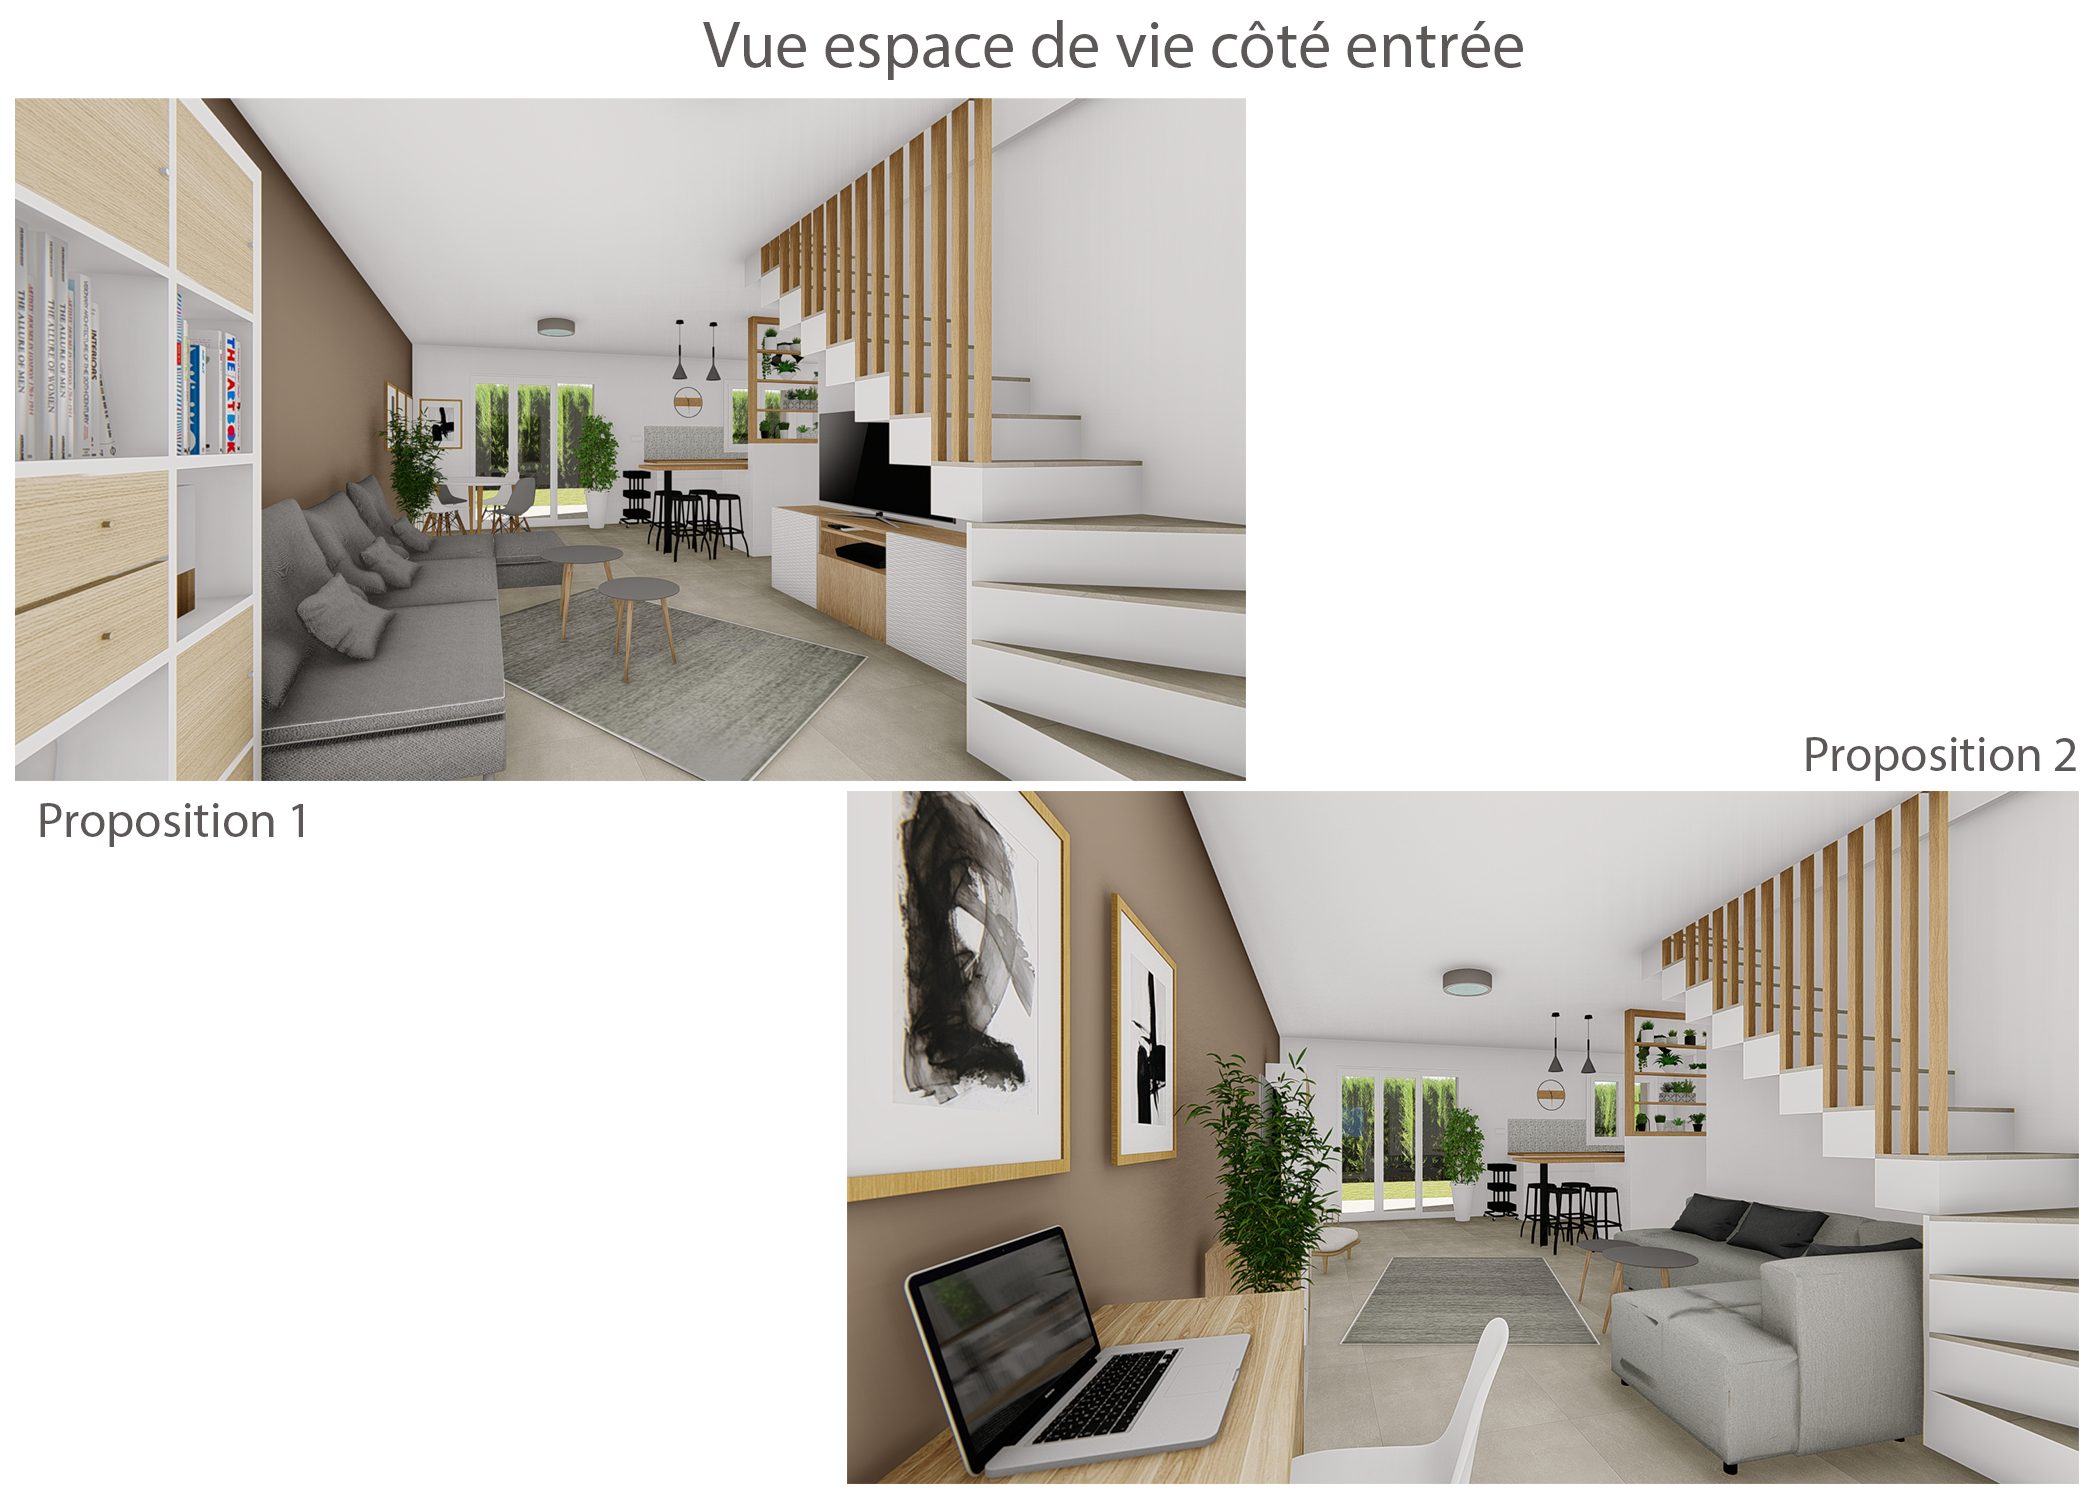 amenagement-decoration-espace de vie maison meyreuil-vue cote entree-dekho design